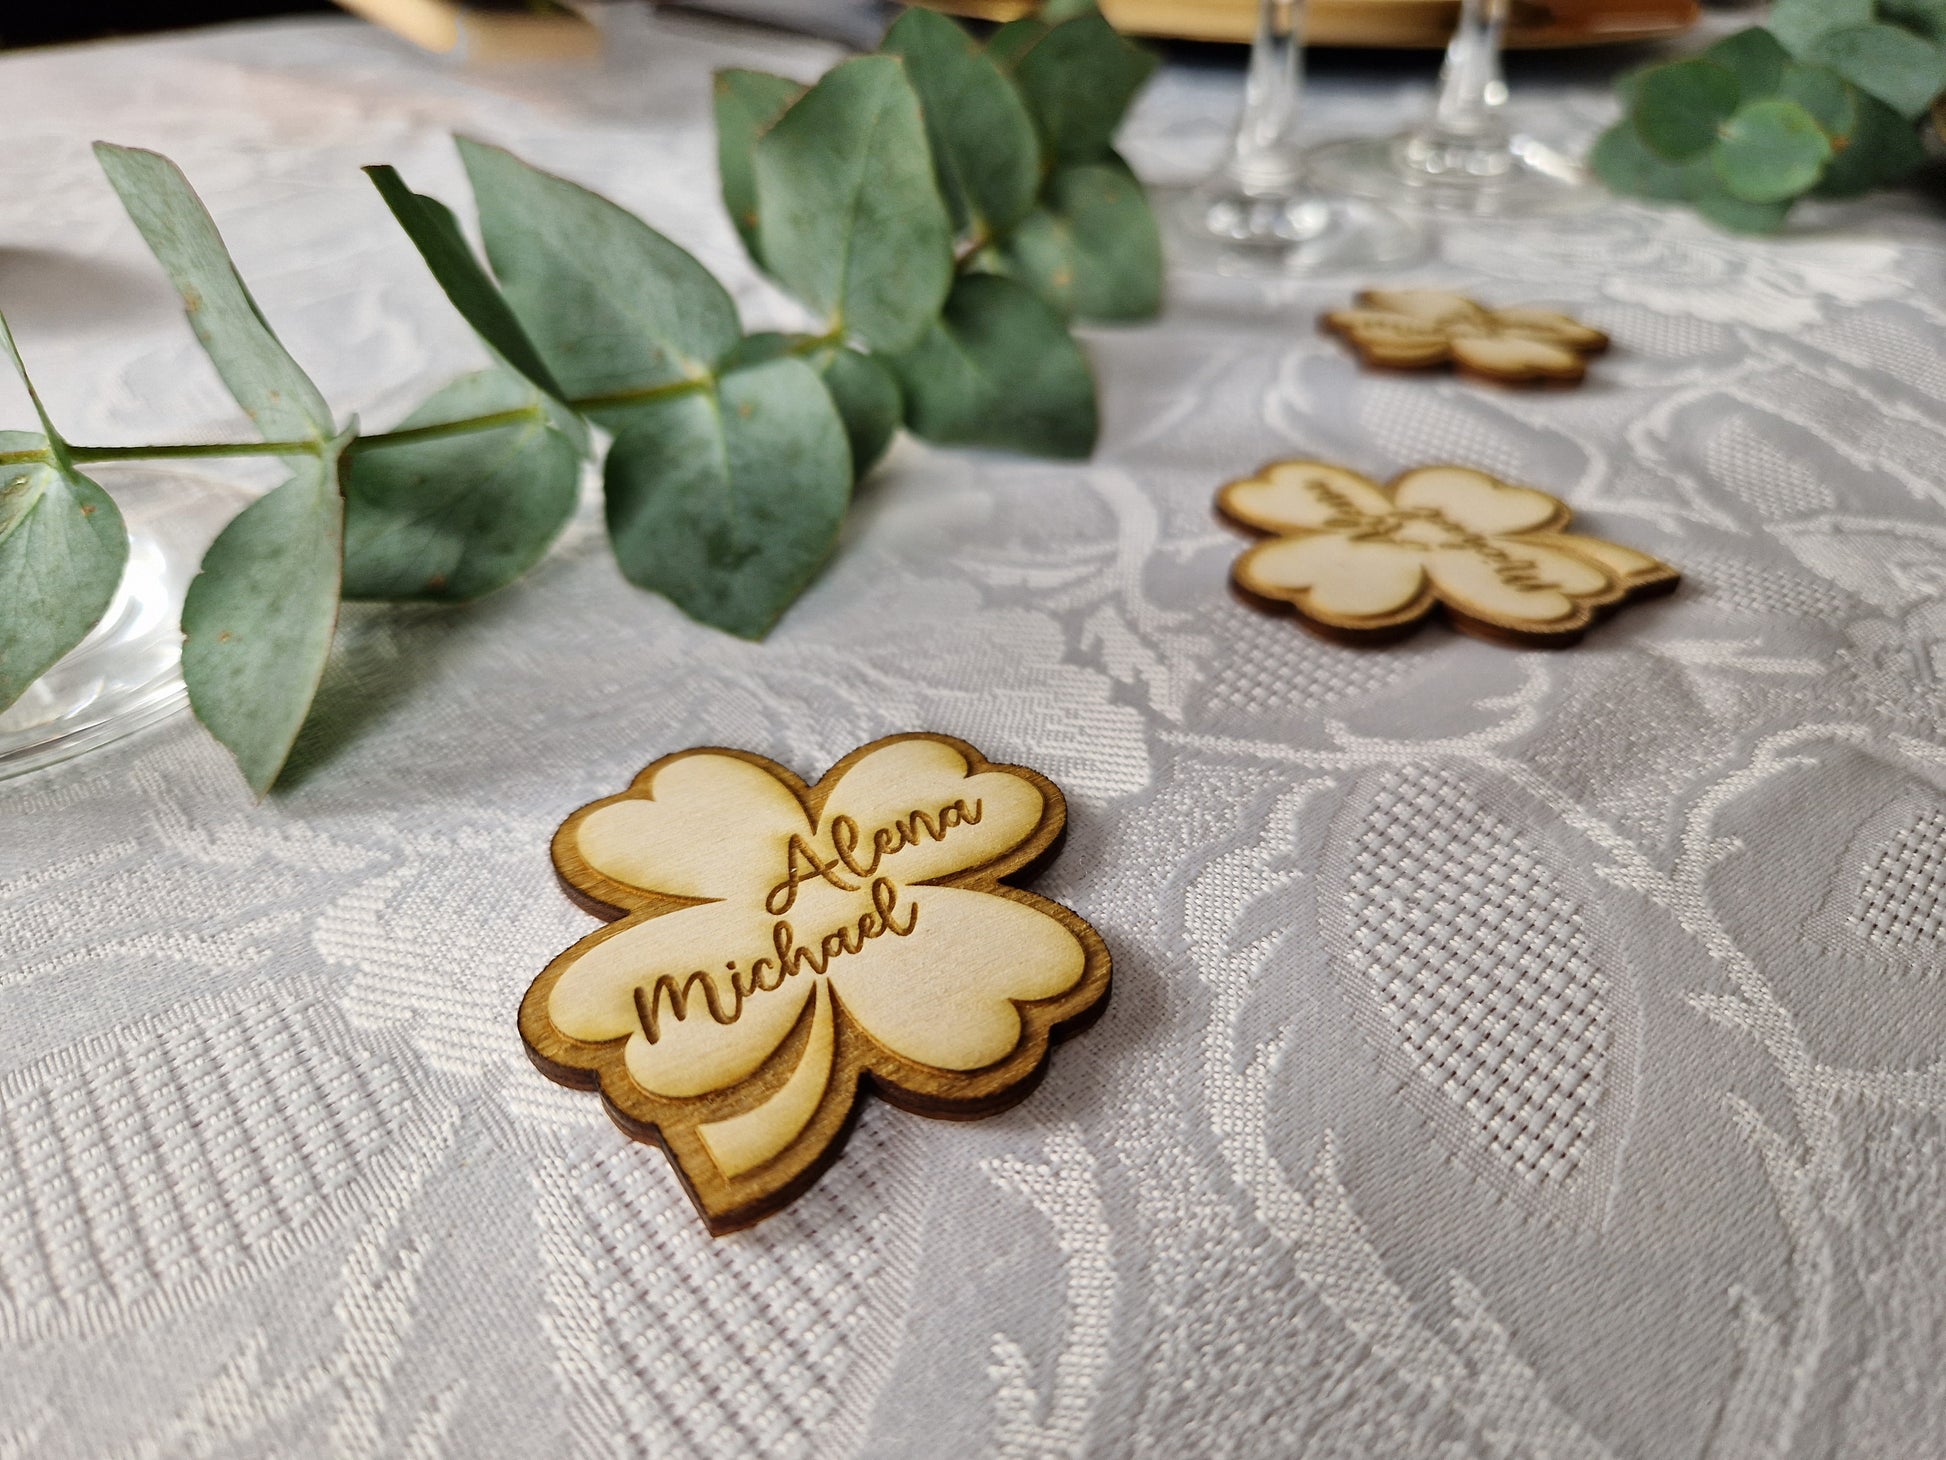 Hochzeit Klee aus Holz mit personalisierter Gravur für Taufe Kommunion Konfirmation